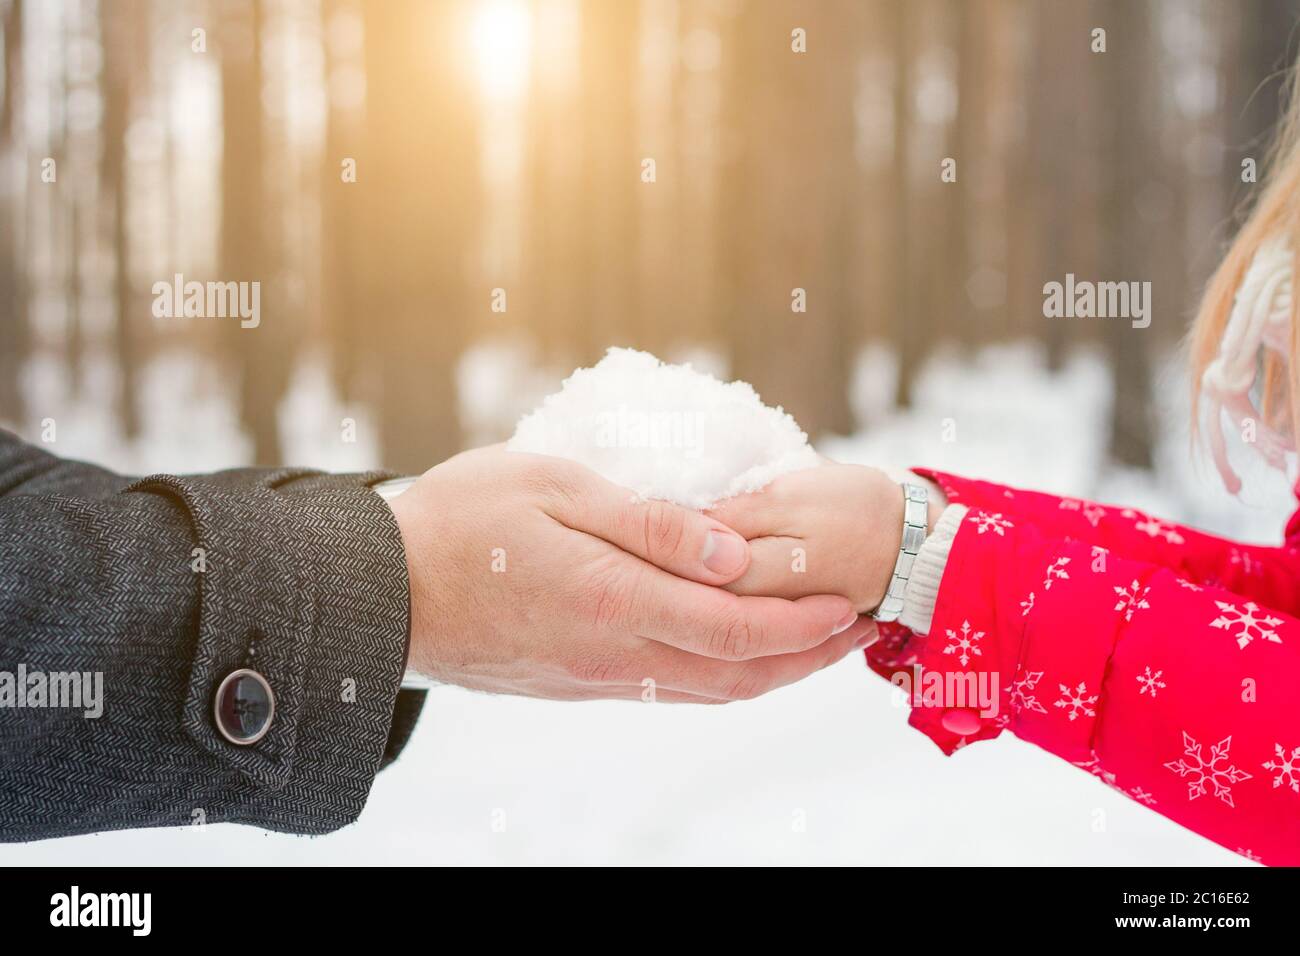 homme et femme tenant les mains de neige. Espace libre pour le texte Banque D'Images